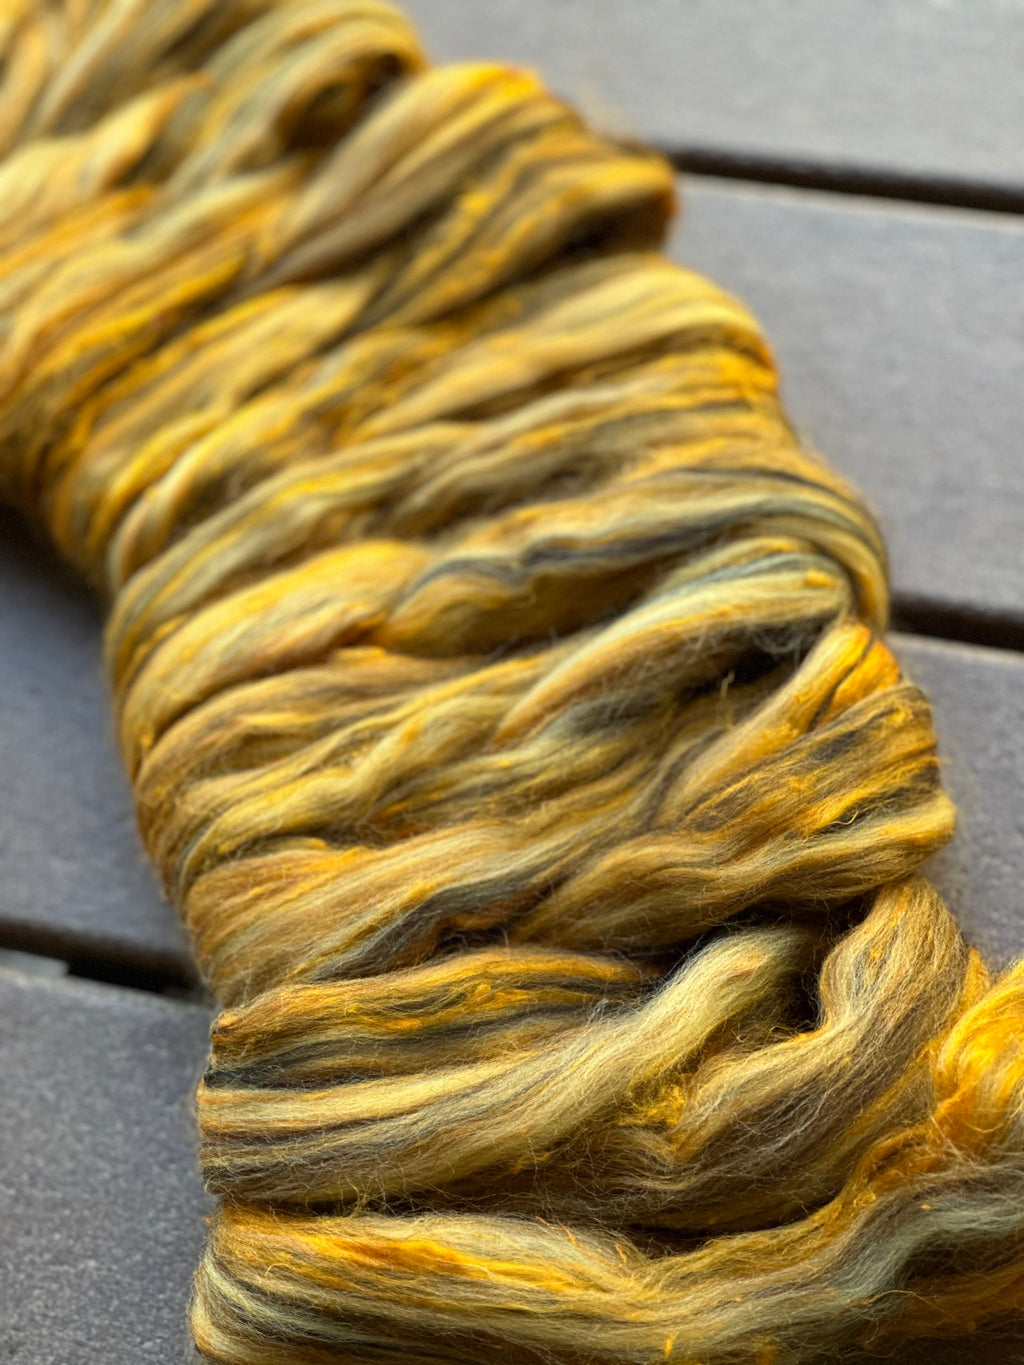 HONEY BEE - Merino and yellow eri silk one ounce - M